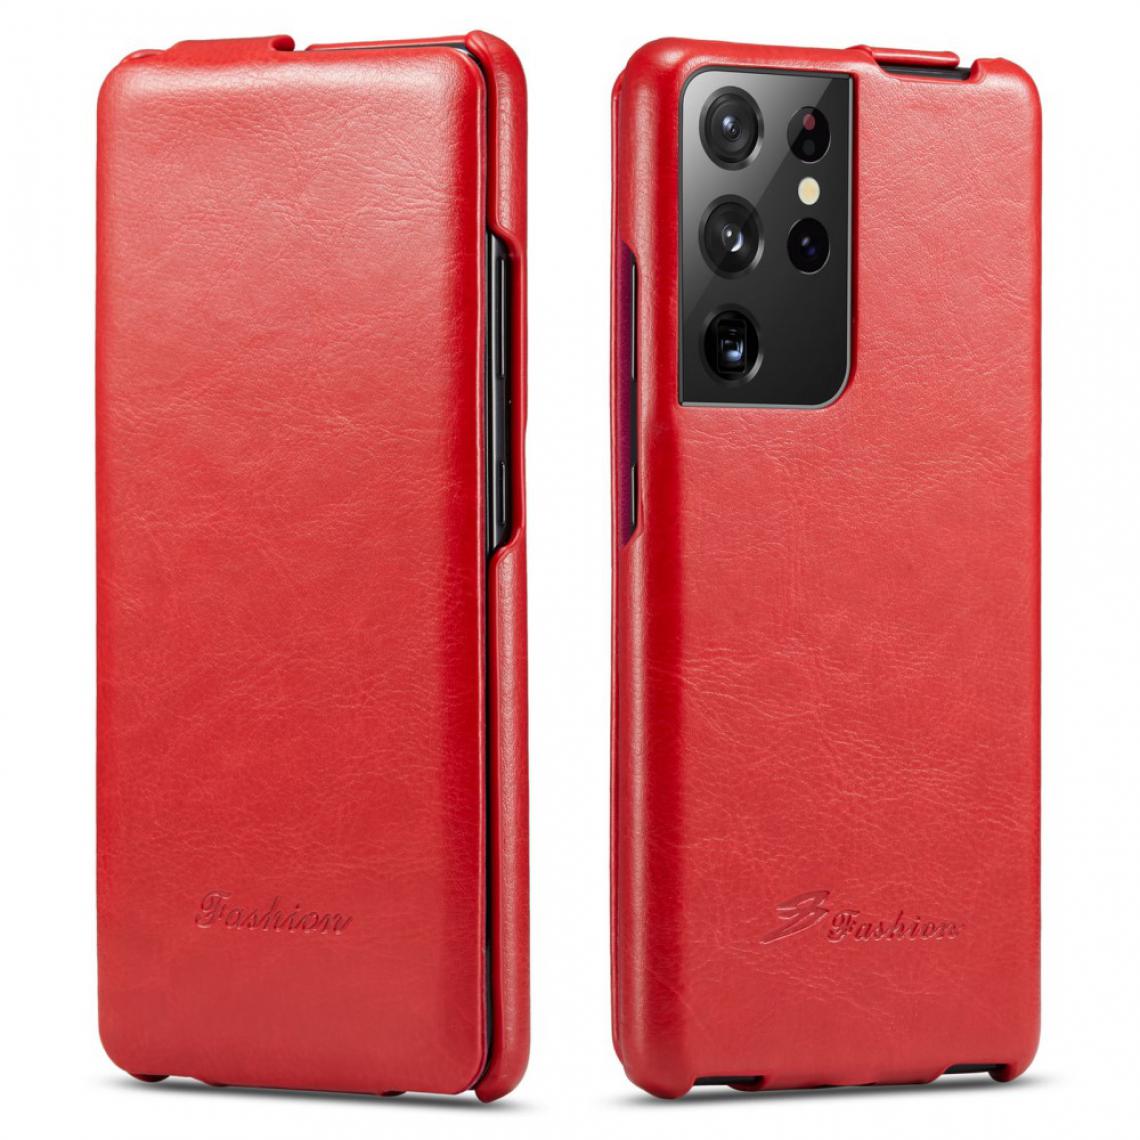 Other - Coque en TPU + PU Flip vertical texturé rouge pour votre Samsung Galaxy S21 Ultra 5G - Coque, étui smartphone